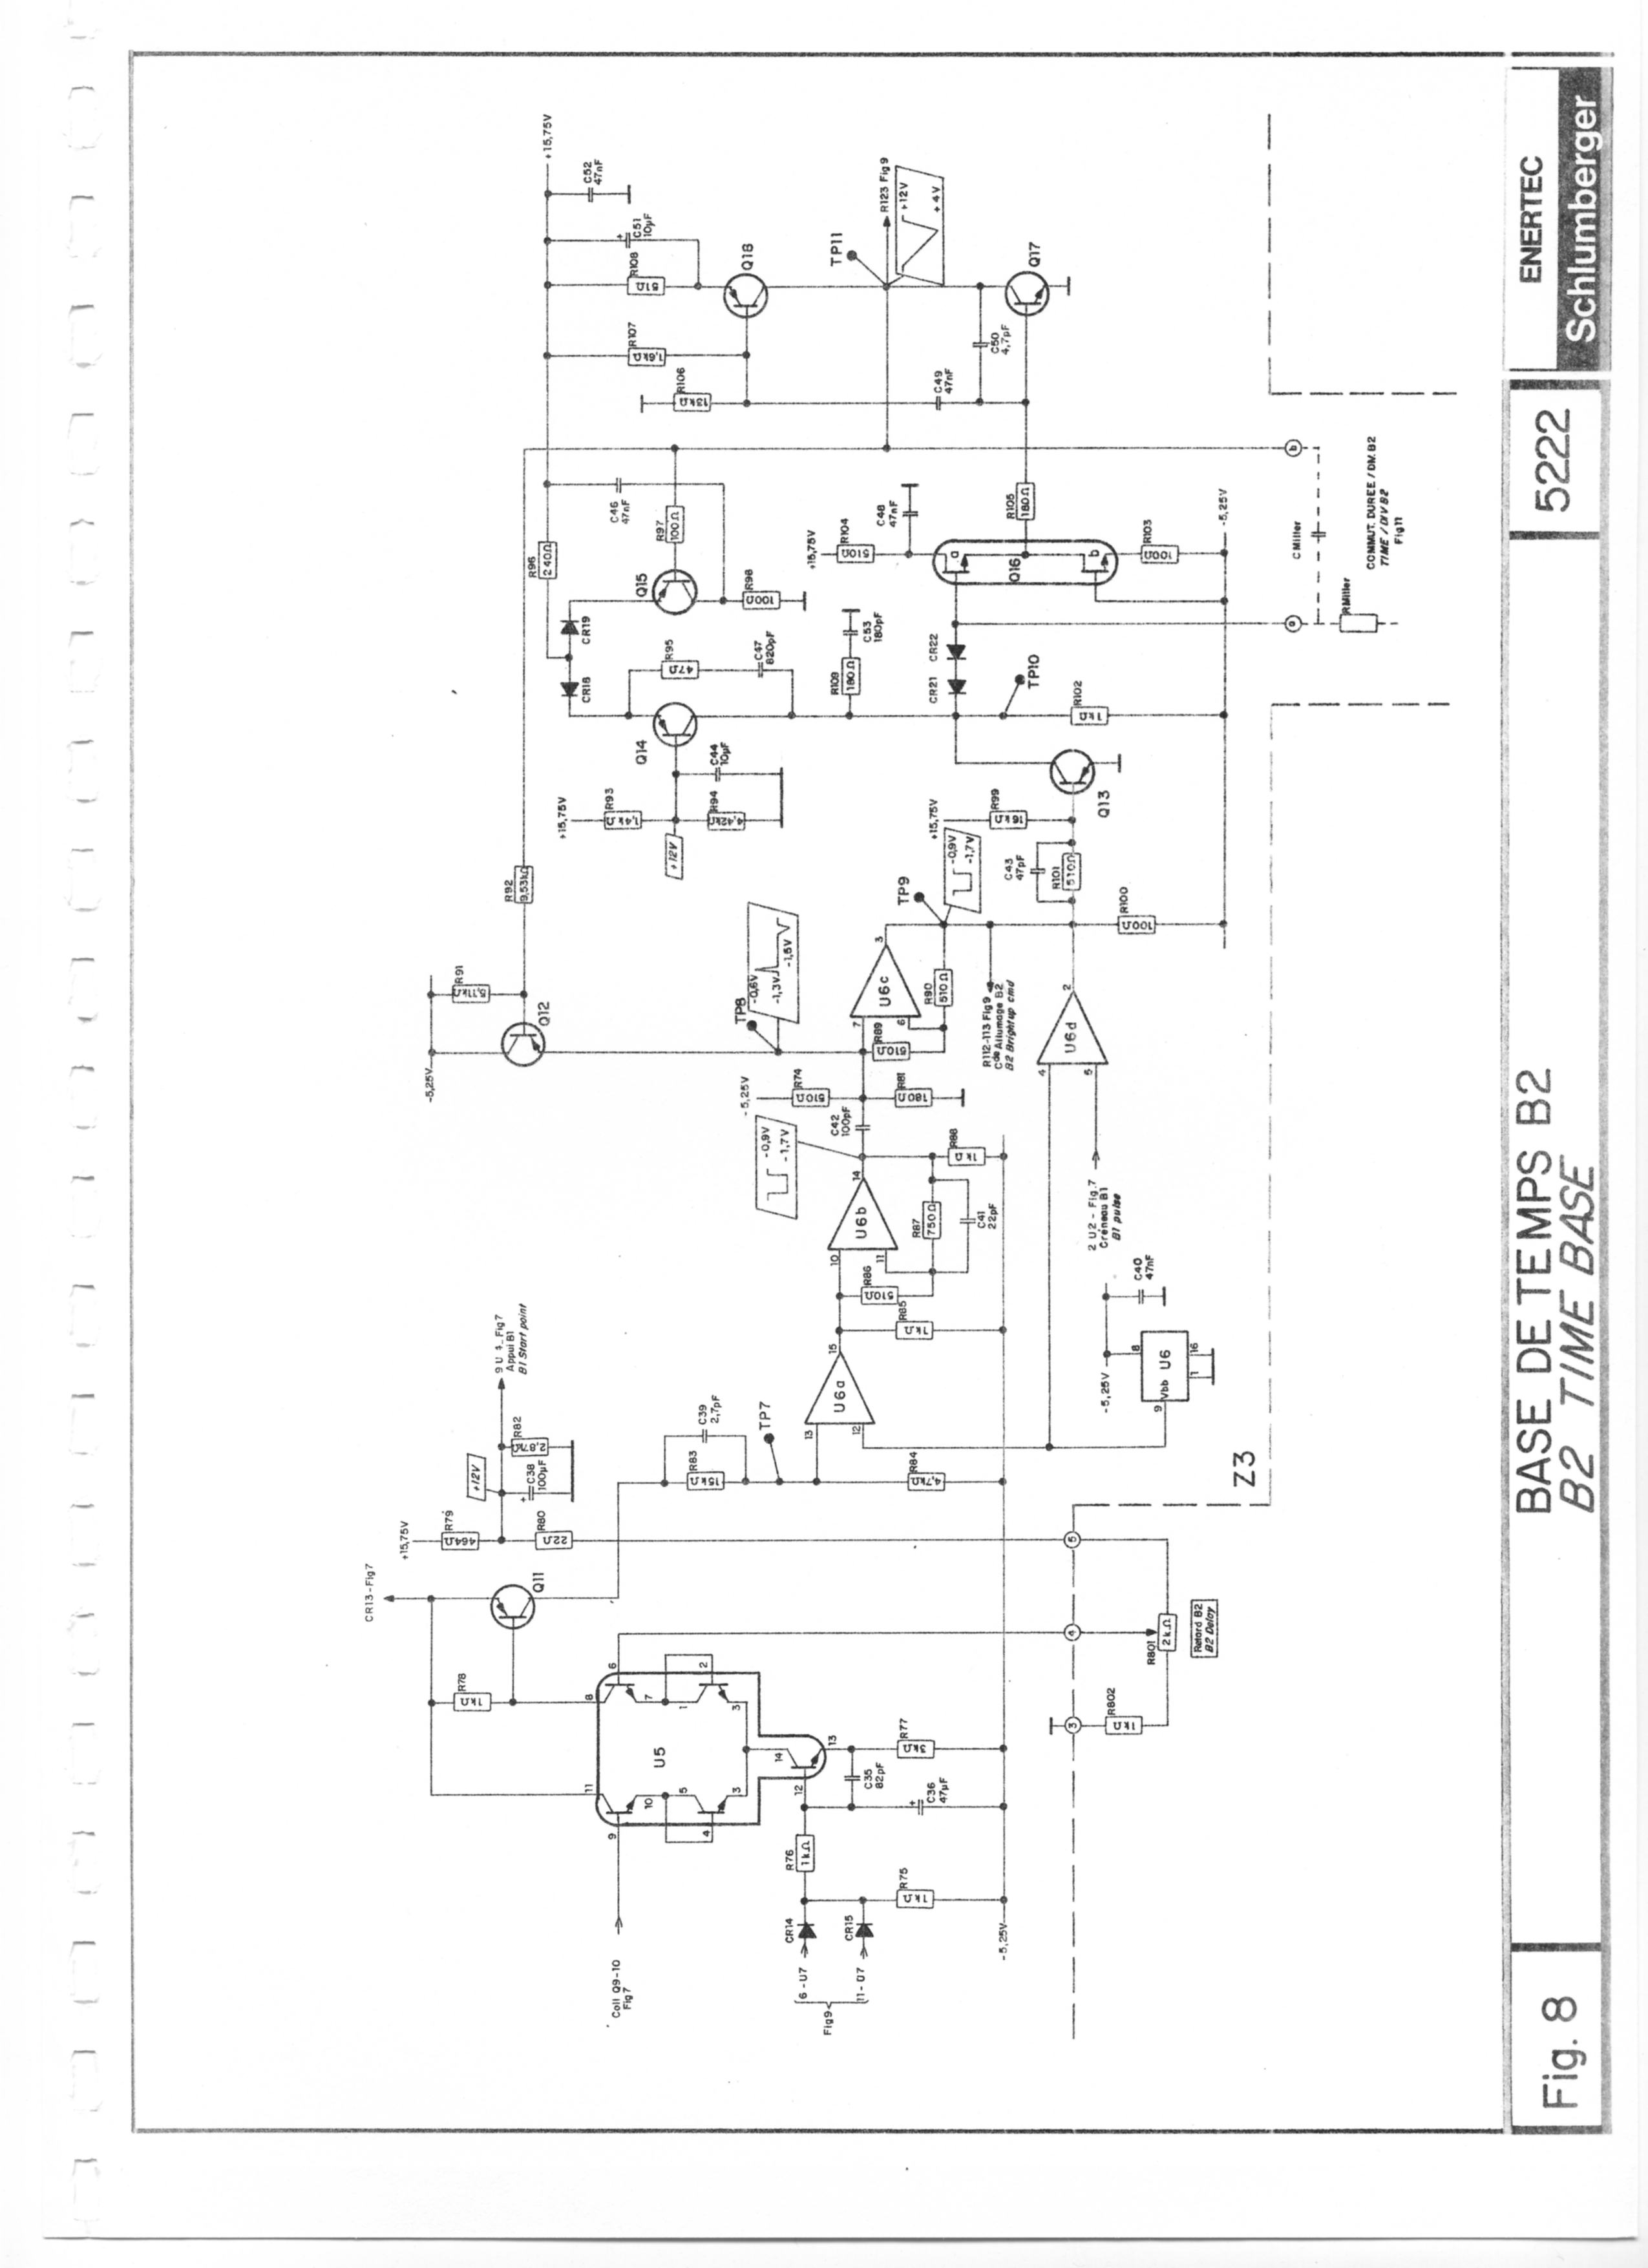 schlumberger 5222 schema oscilloscope schlumberger 5222